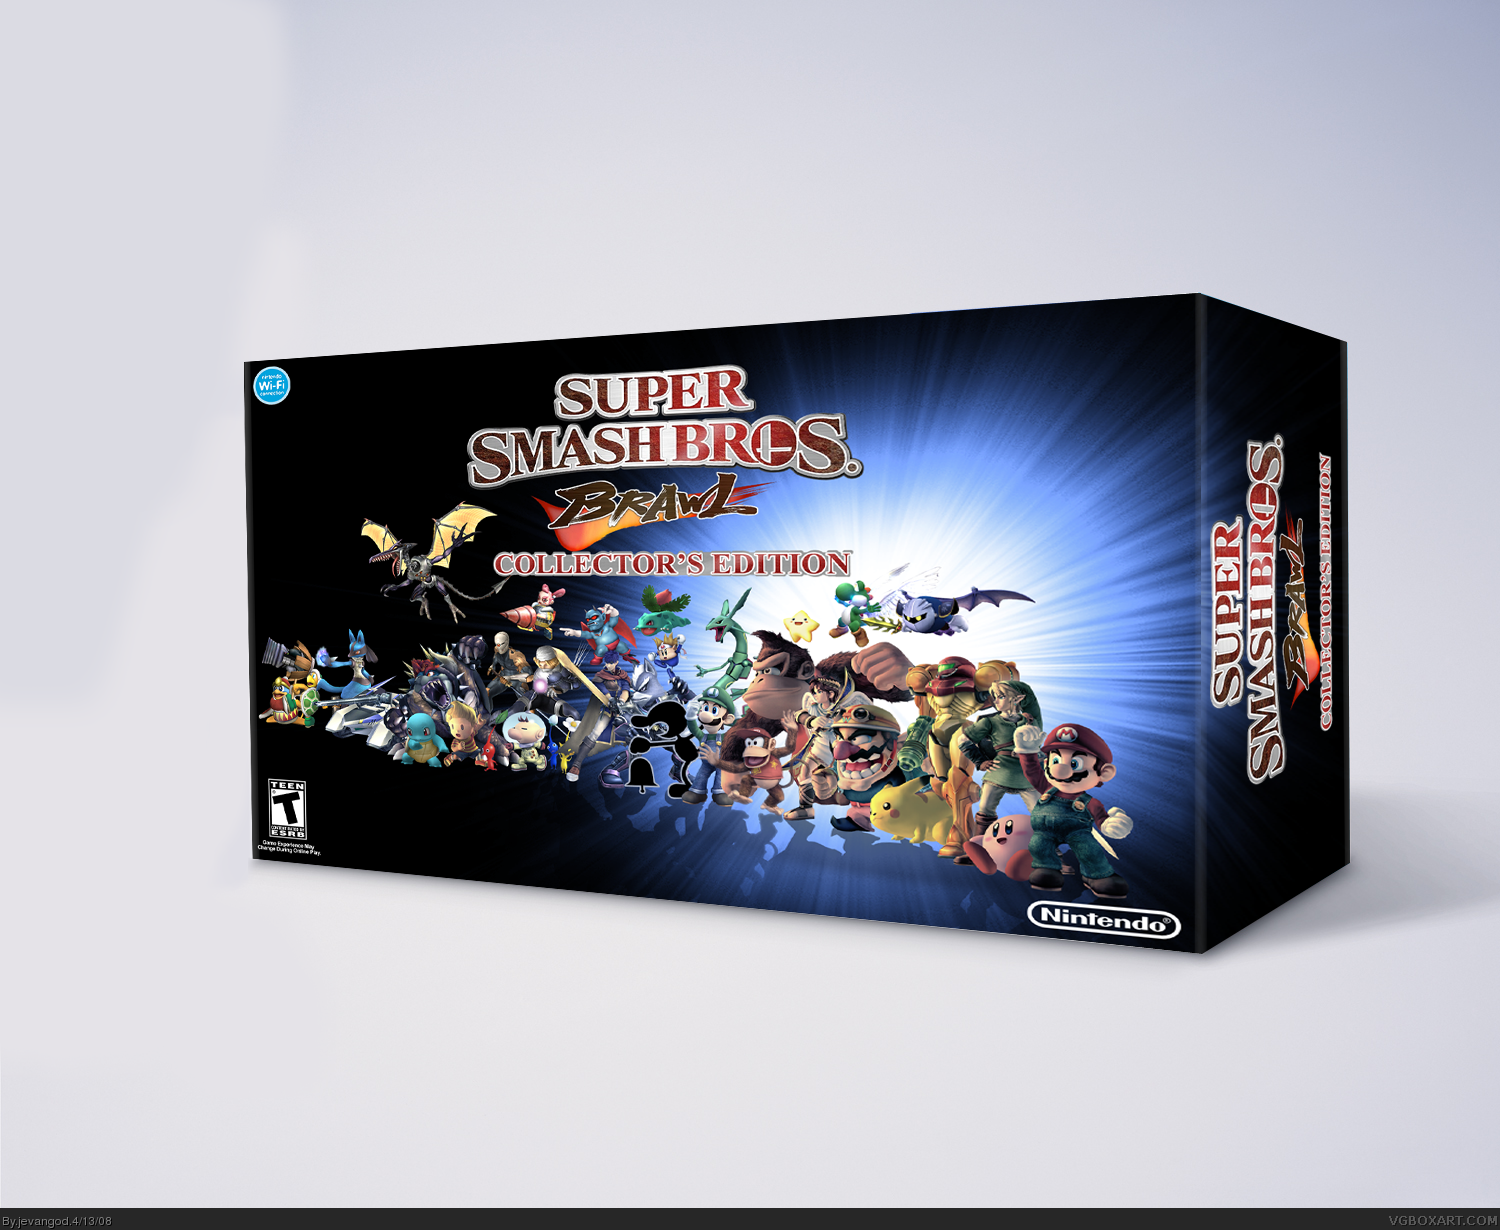 Super Smash Bros. Brawl Collector's Edition box cover